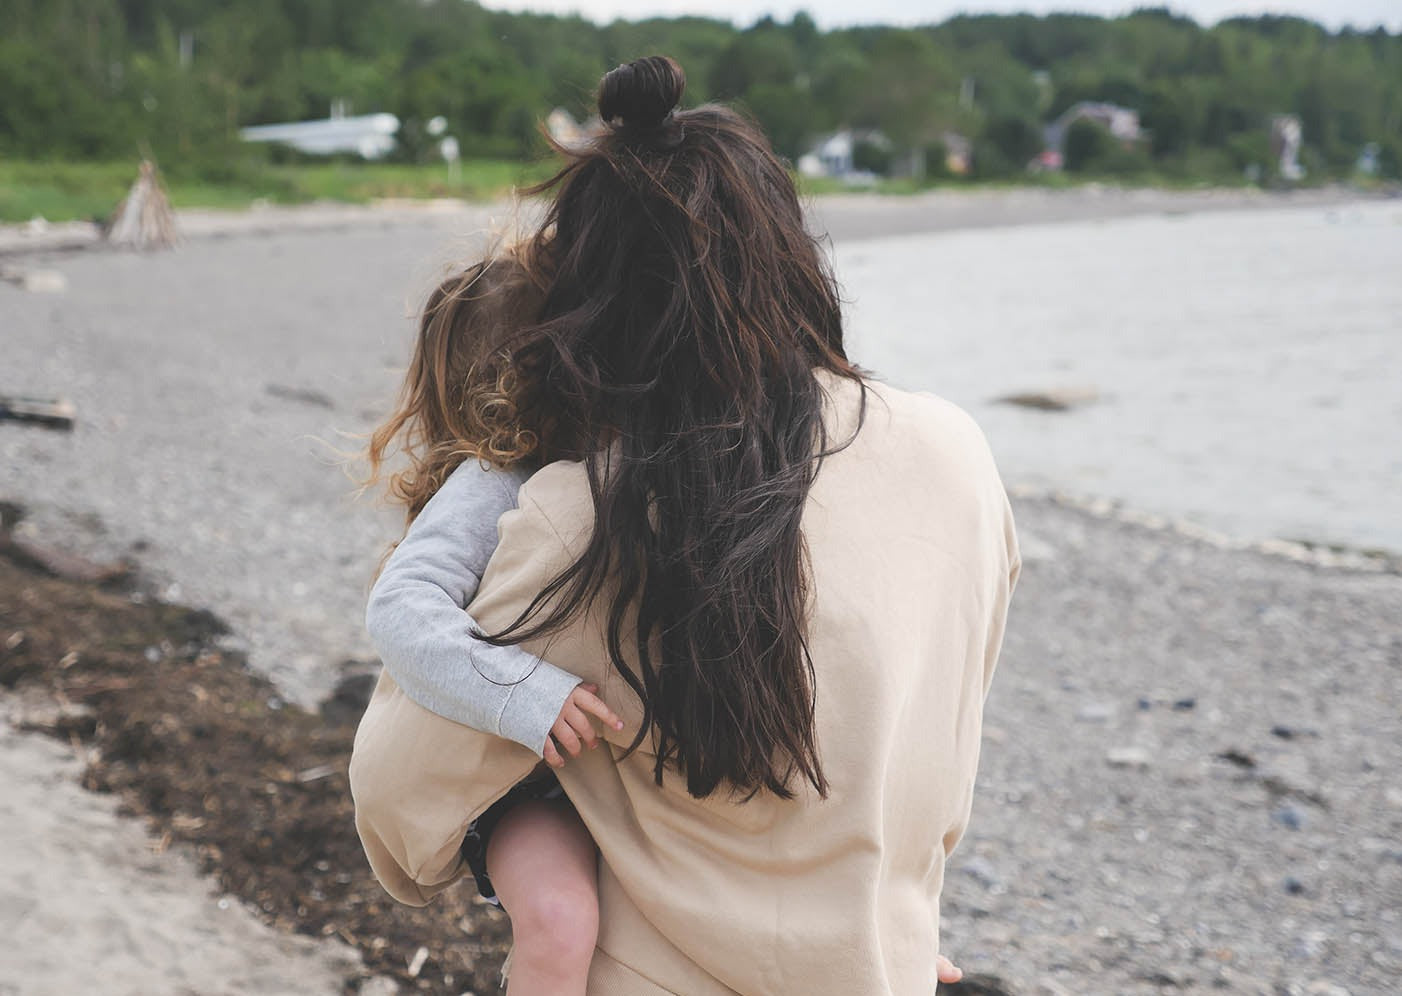 Maman qui porte le Sweatshirt d'allaitement Marées, couleur beige. La maman est de dos et elle tient sa petite fille dans ses bras. On voit une plage du bas du fleuve derrière. Au Québec.